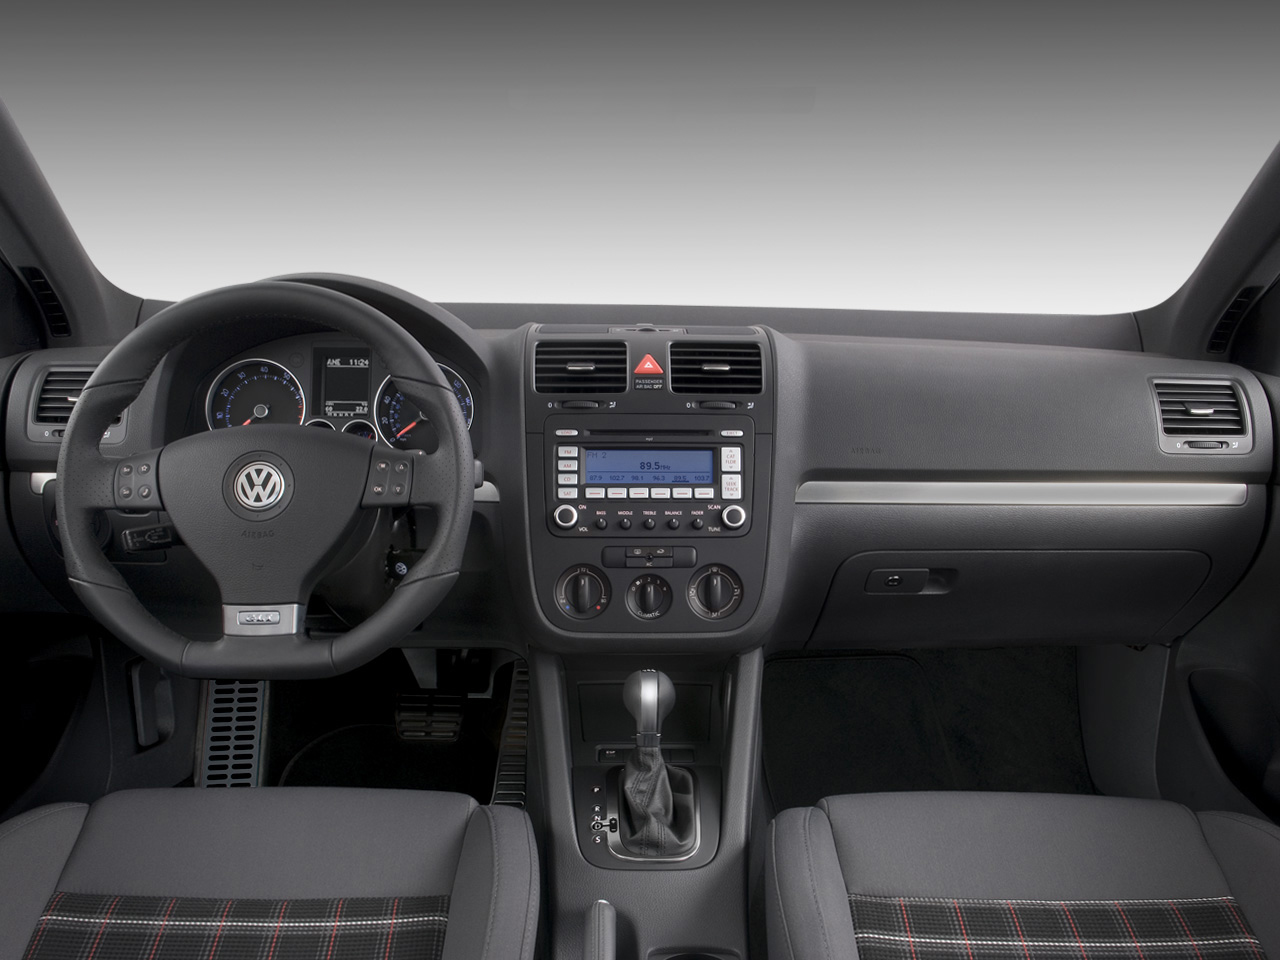 Volkswagen Jetta 2.5 SEL